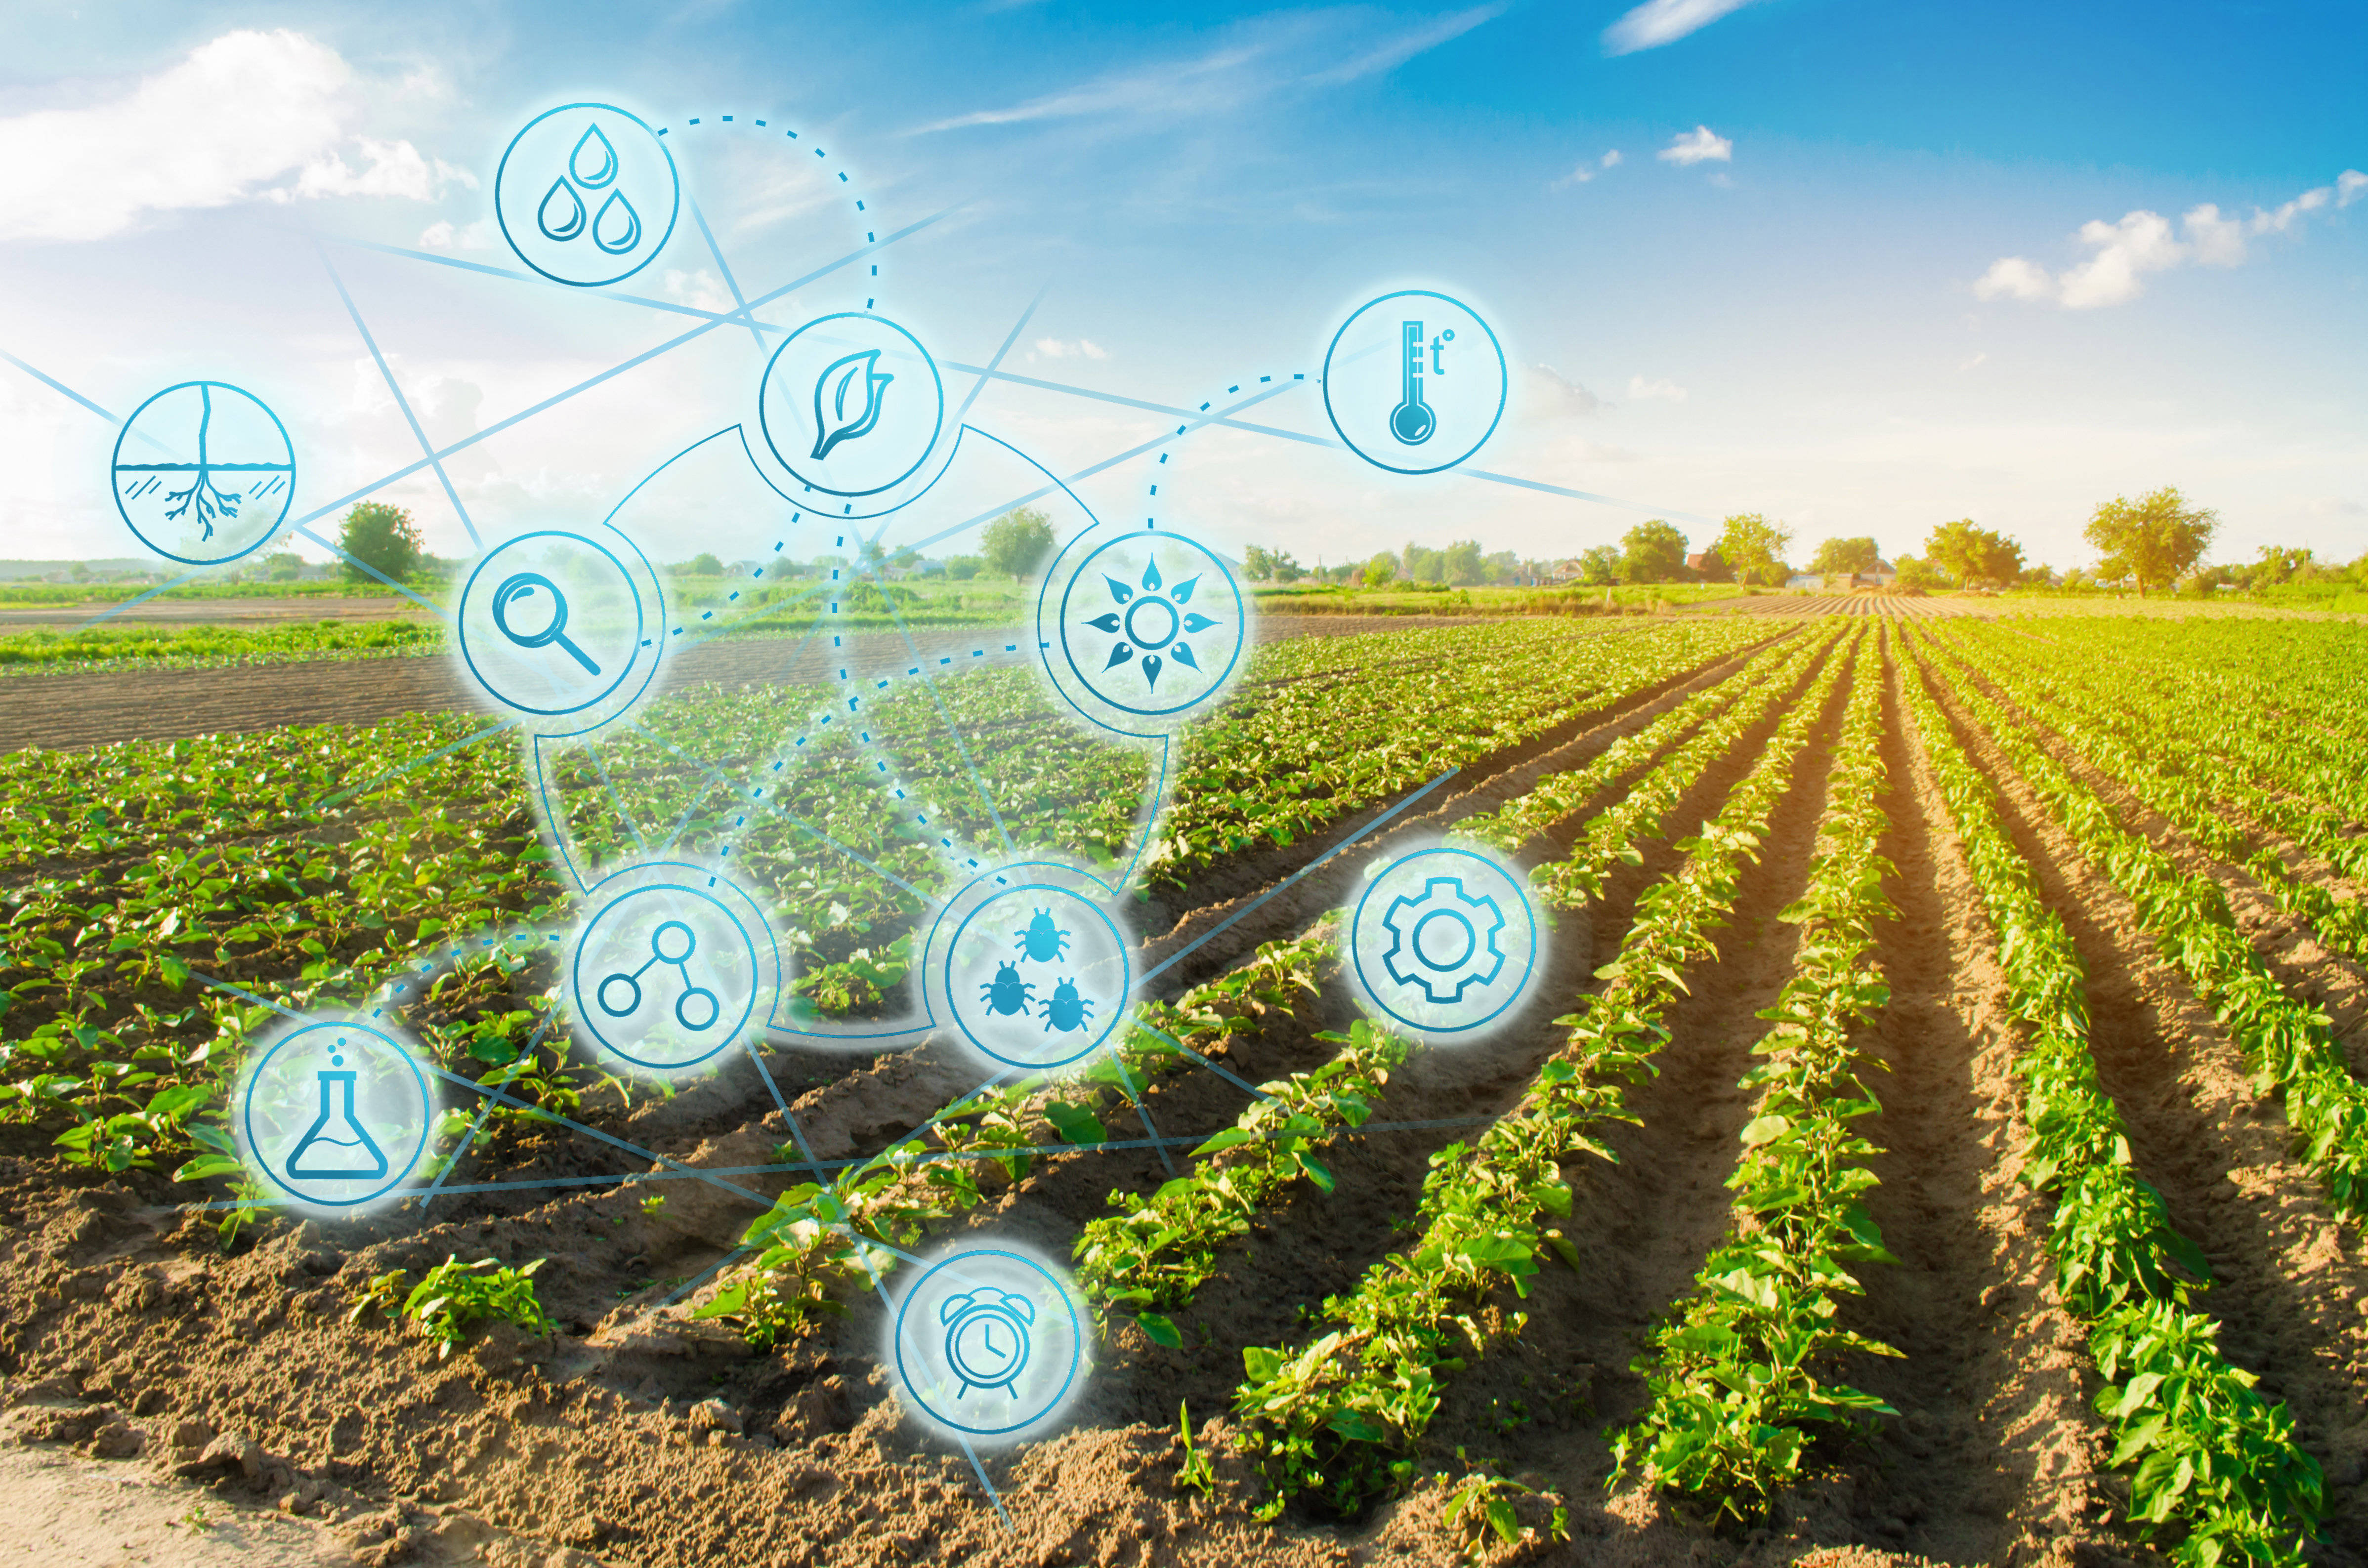 Поле value. Современные технологии в сельском хозяйстве. IOT-технологии в сельском хозяйстве. Информационные технологии в сельском хозяйстве. Цифровизация сельского хозяйства.